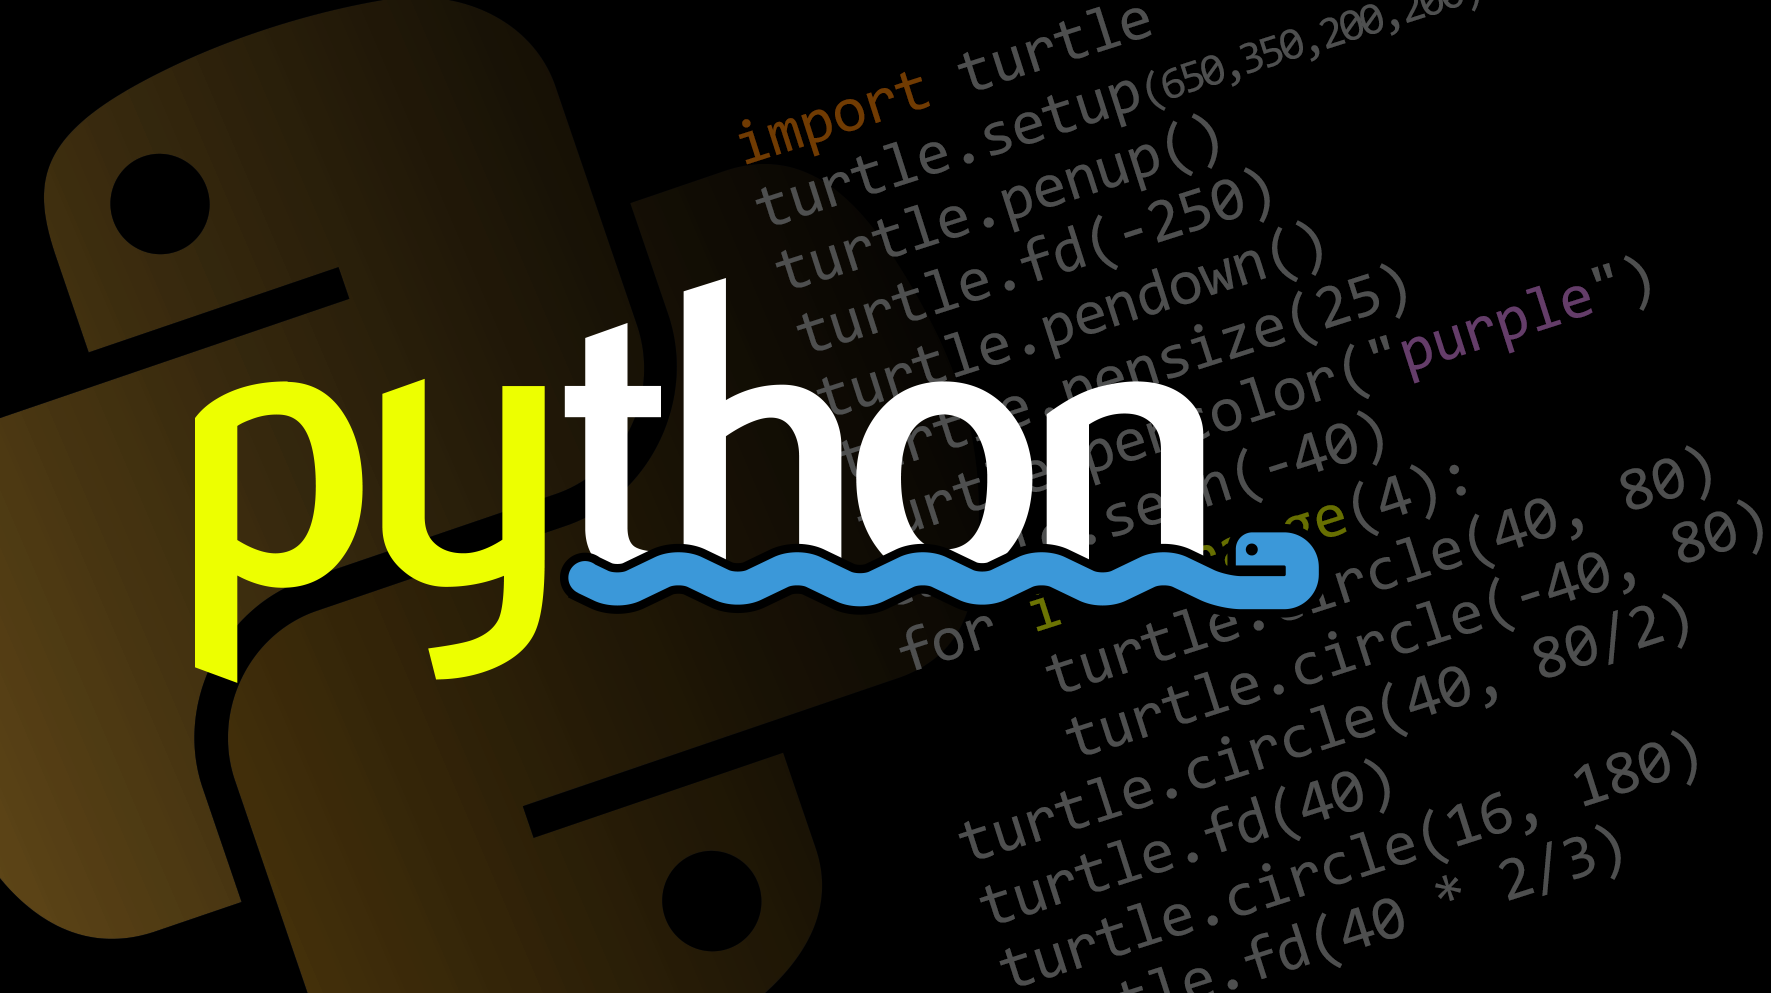 python编程入门教学视频-Python编程入门电子书及视频教程-非常详细『强烈推荐』...-CSDN博客